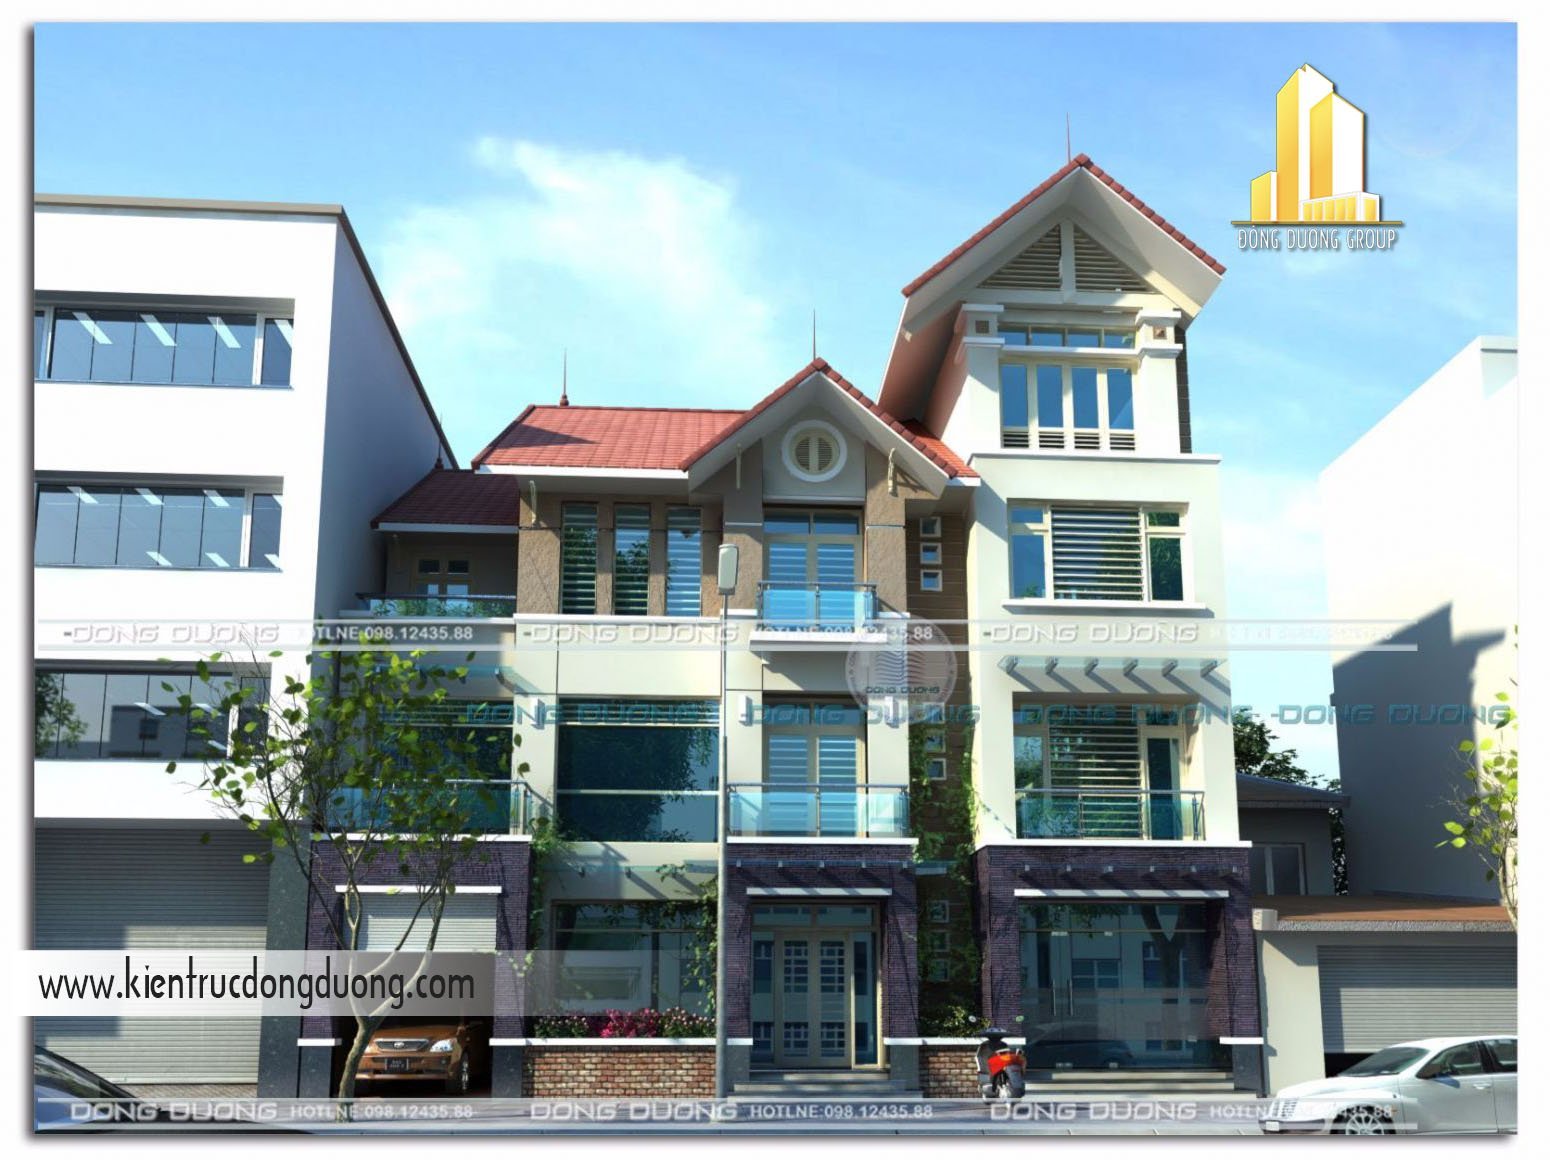 Thiết kế nhà phố kinh doanh 3 tầng NP1124-kientrucdongduong1